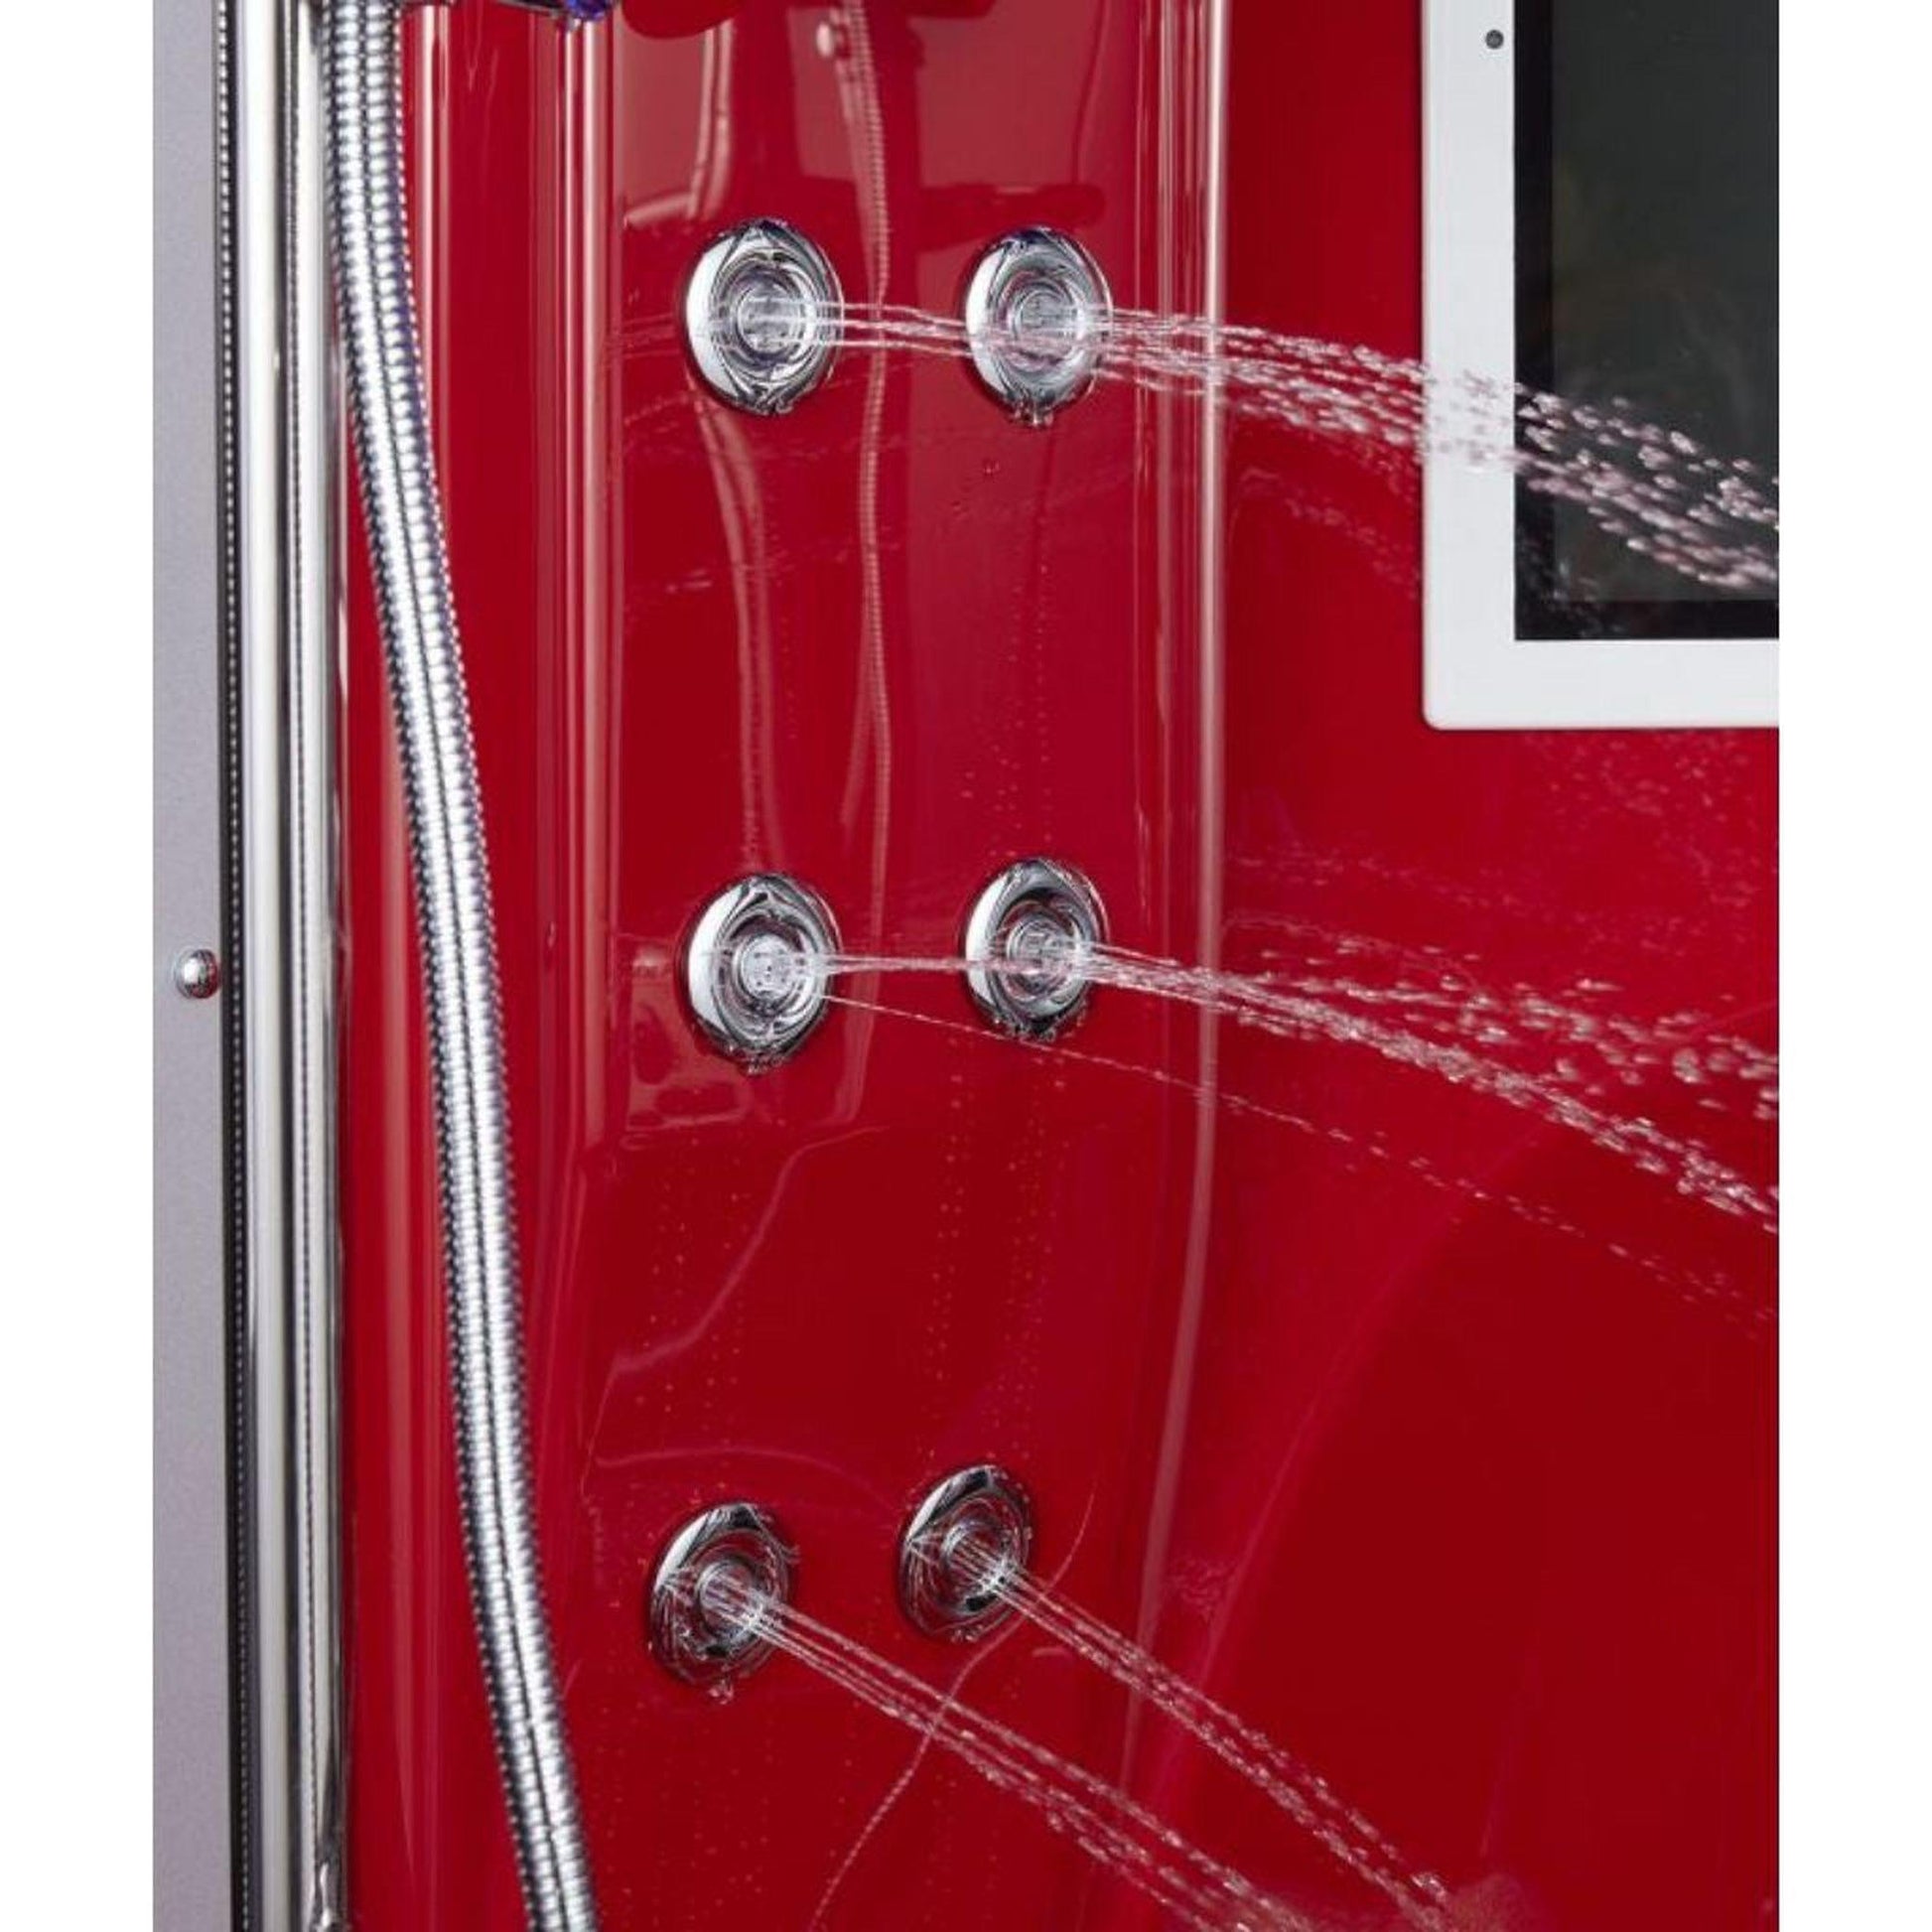 Maya Bath Platinum Superior 64" x 64" x 88" 34-Jet Round Red Computerized Steam Shower Massage Bathtub With Sliding Doors